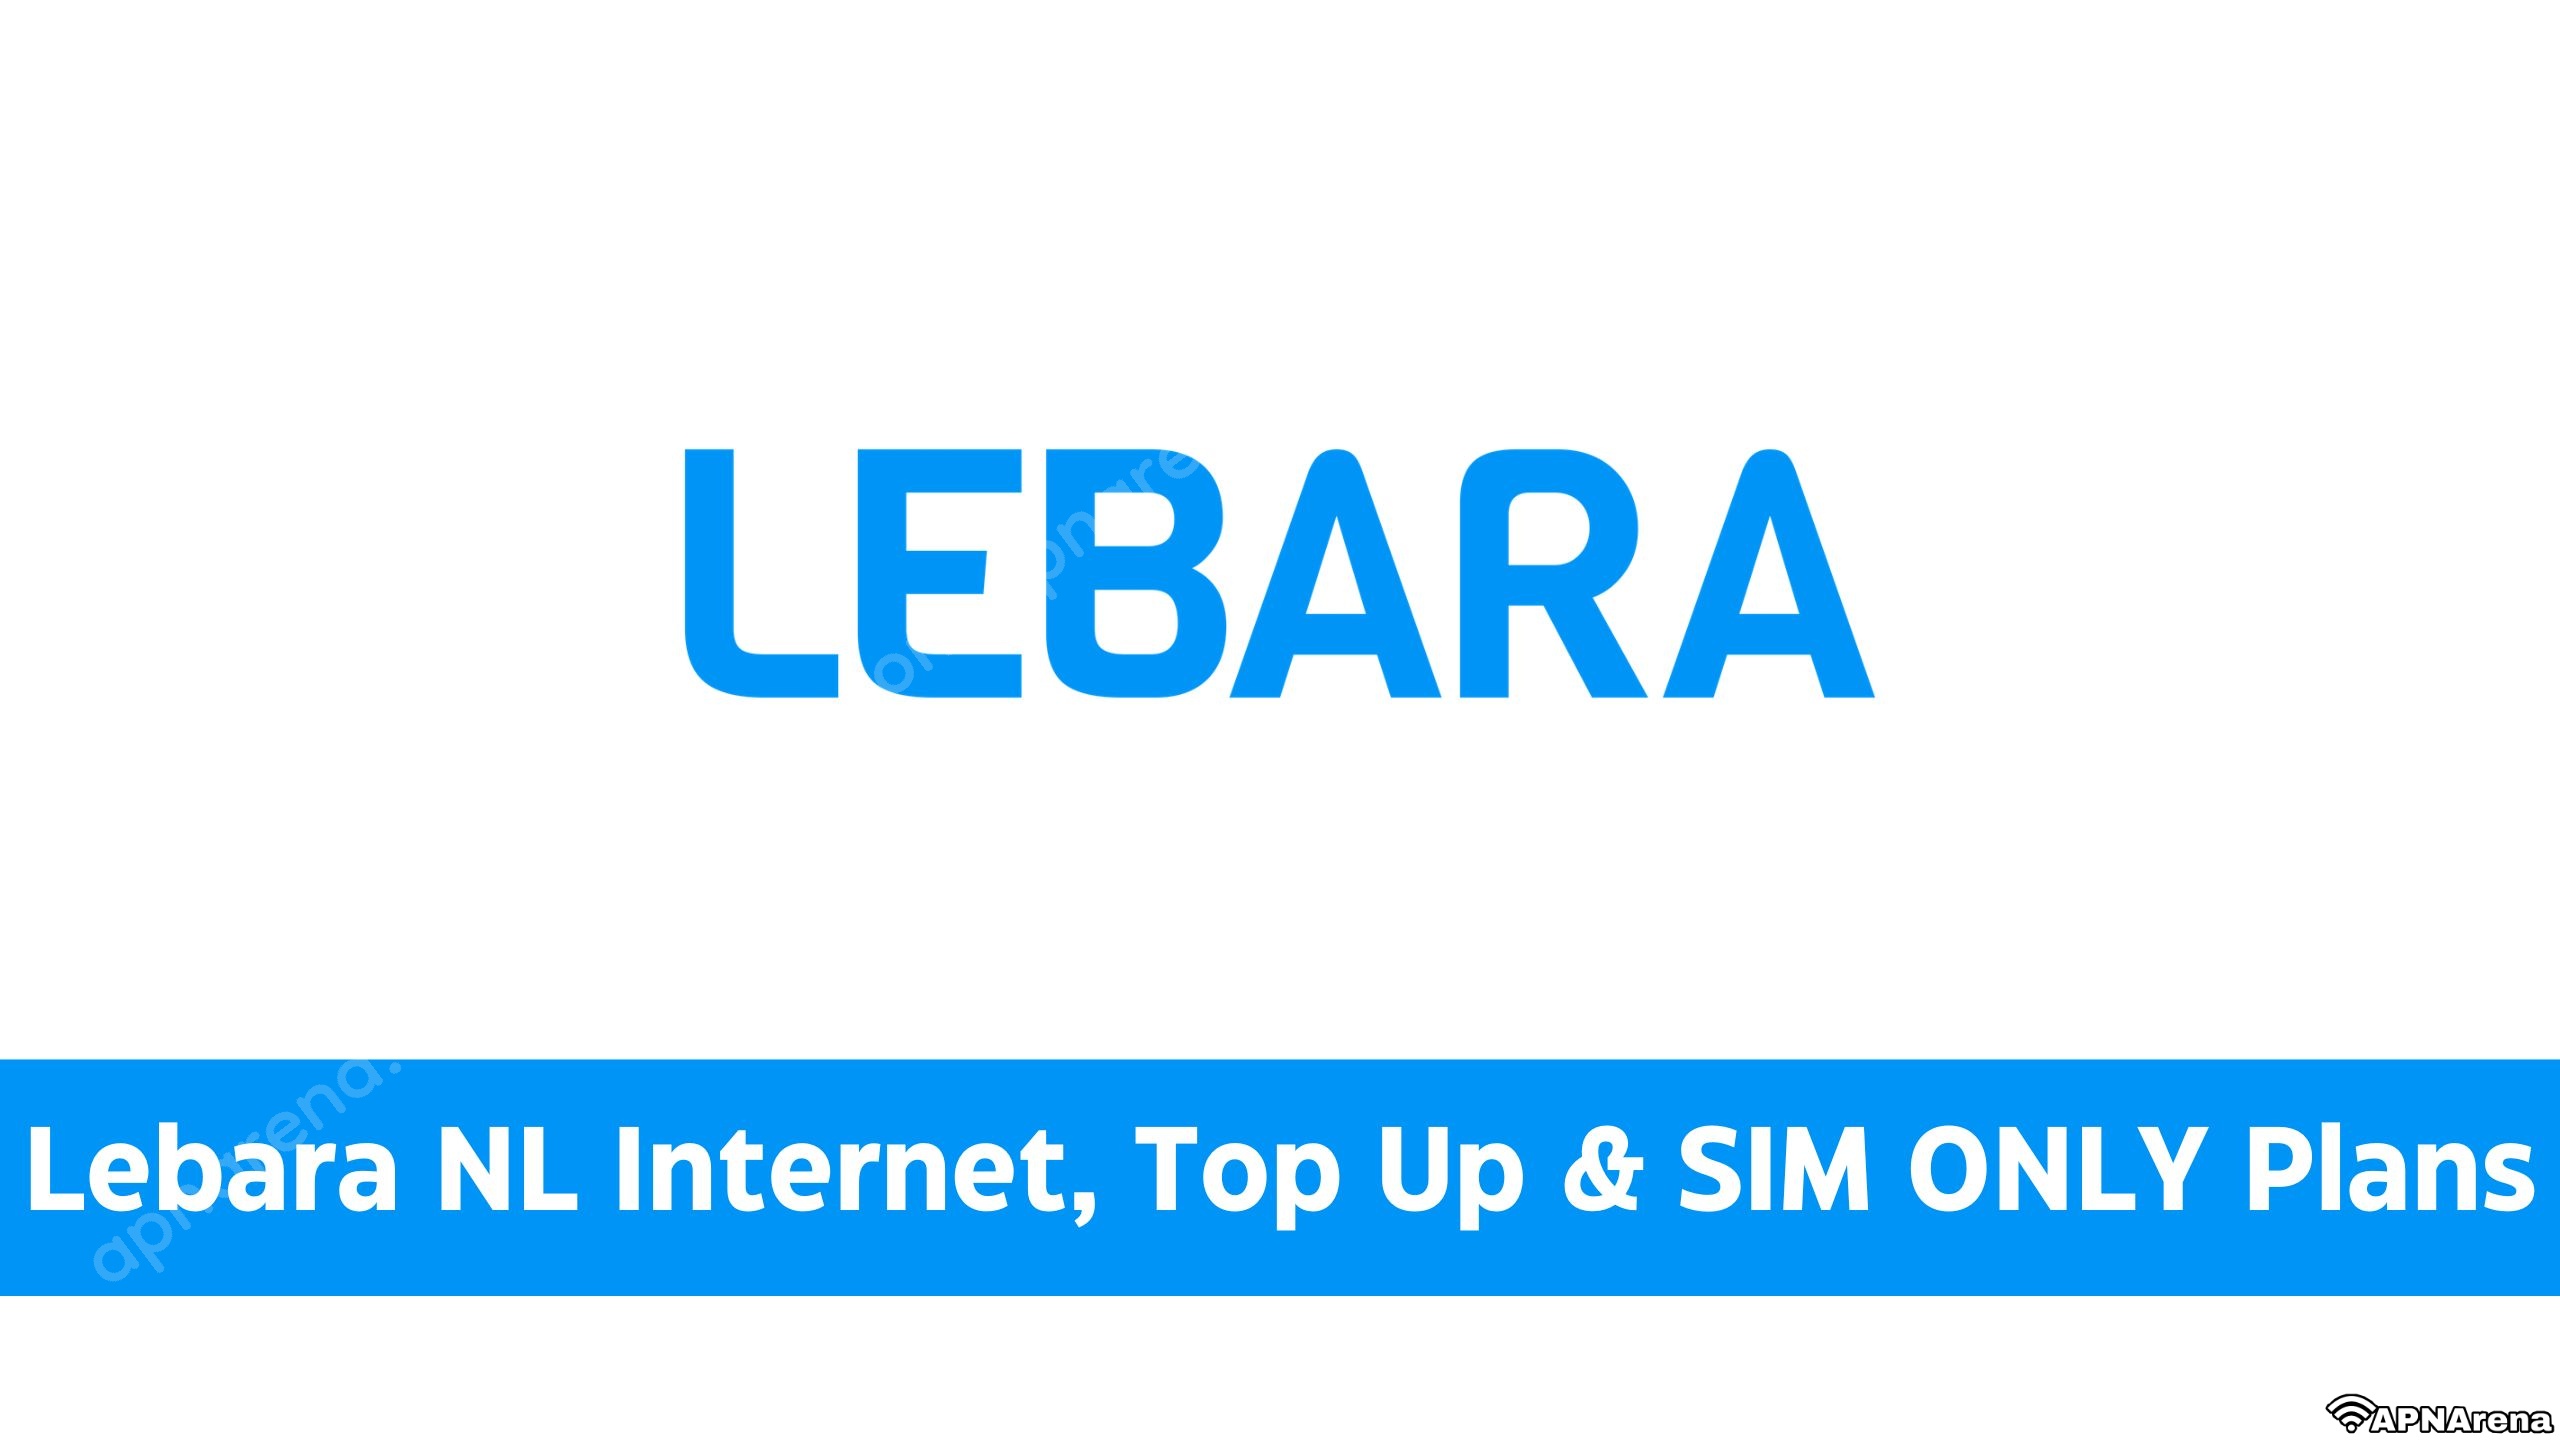 Lebara NL Internet, Top & SIM ONLY Plans | Beltegoed, & Other Data Bundles - 3G 4G 5G LTE Internet Setting